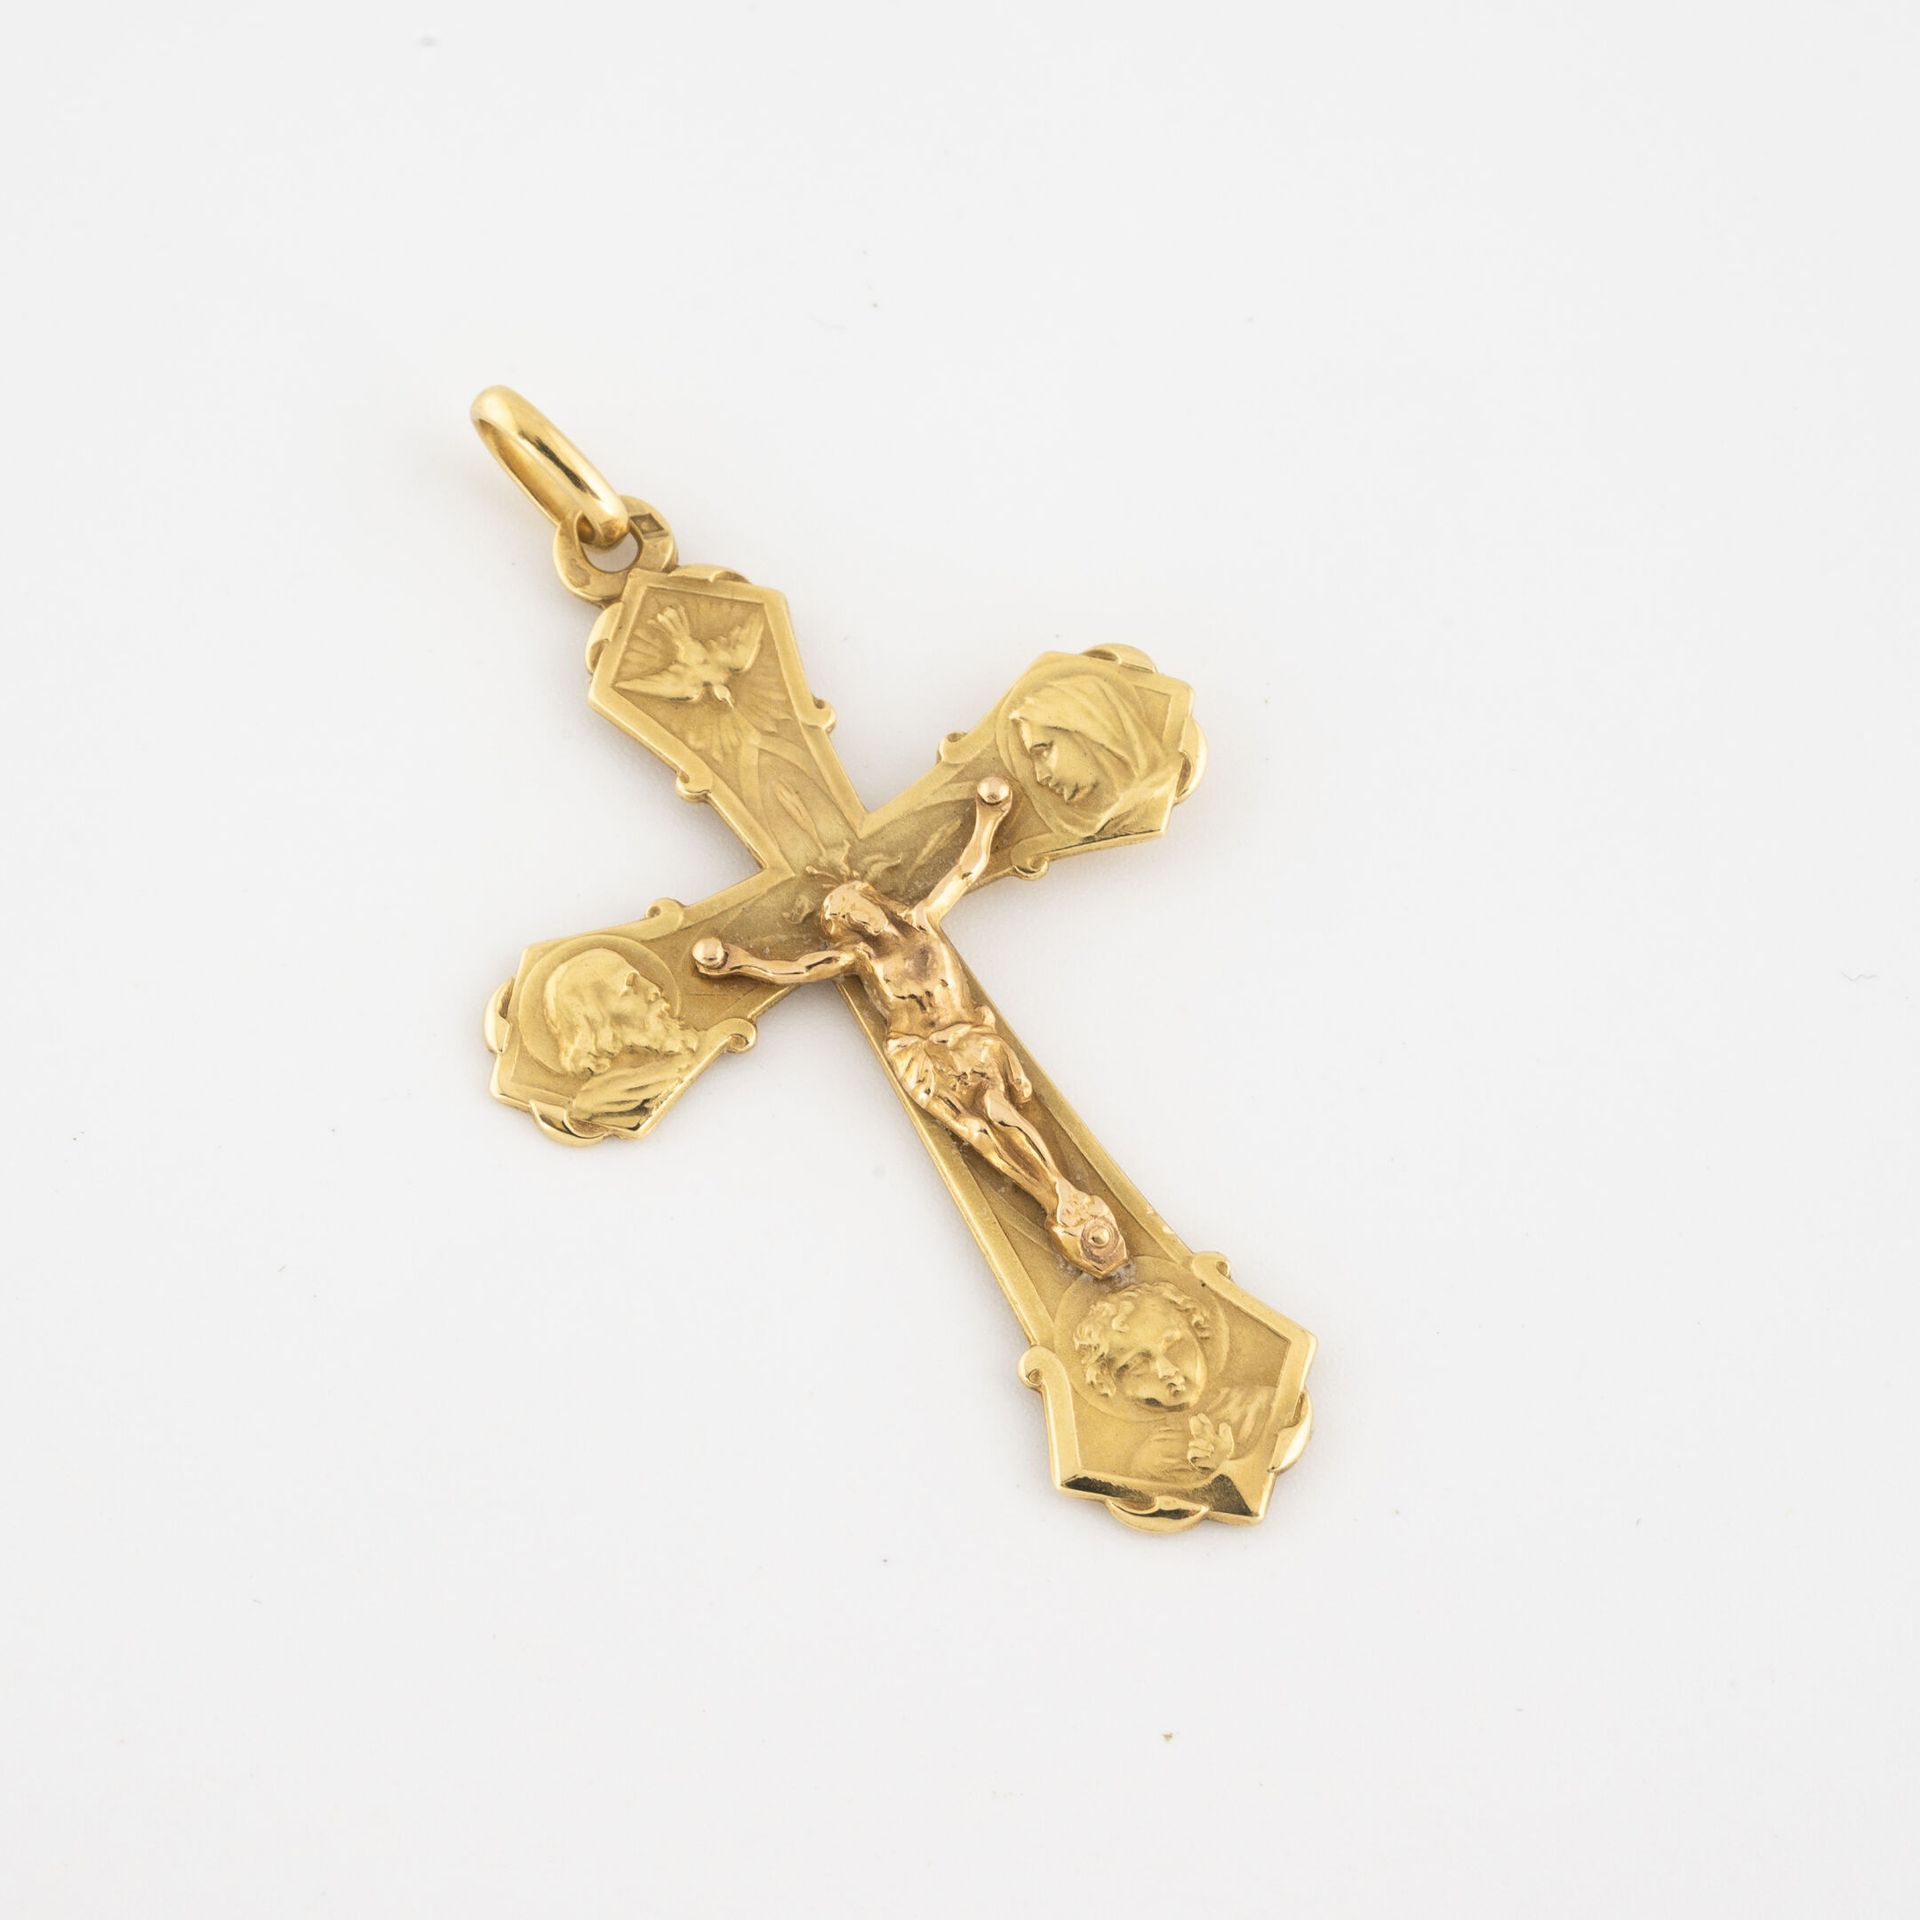 Null Colgante de cruz en oro amarillo (750).

Peso : 5 g. 

Un shock.